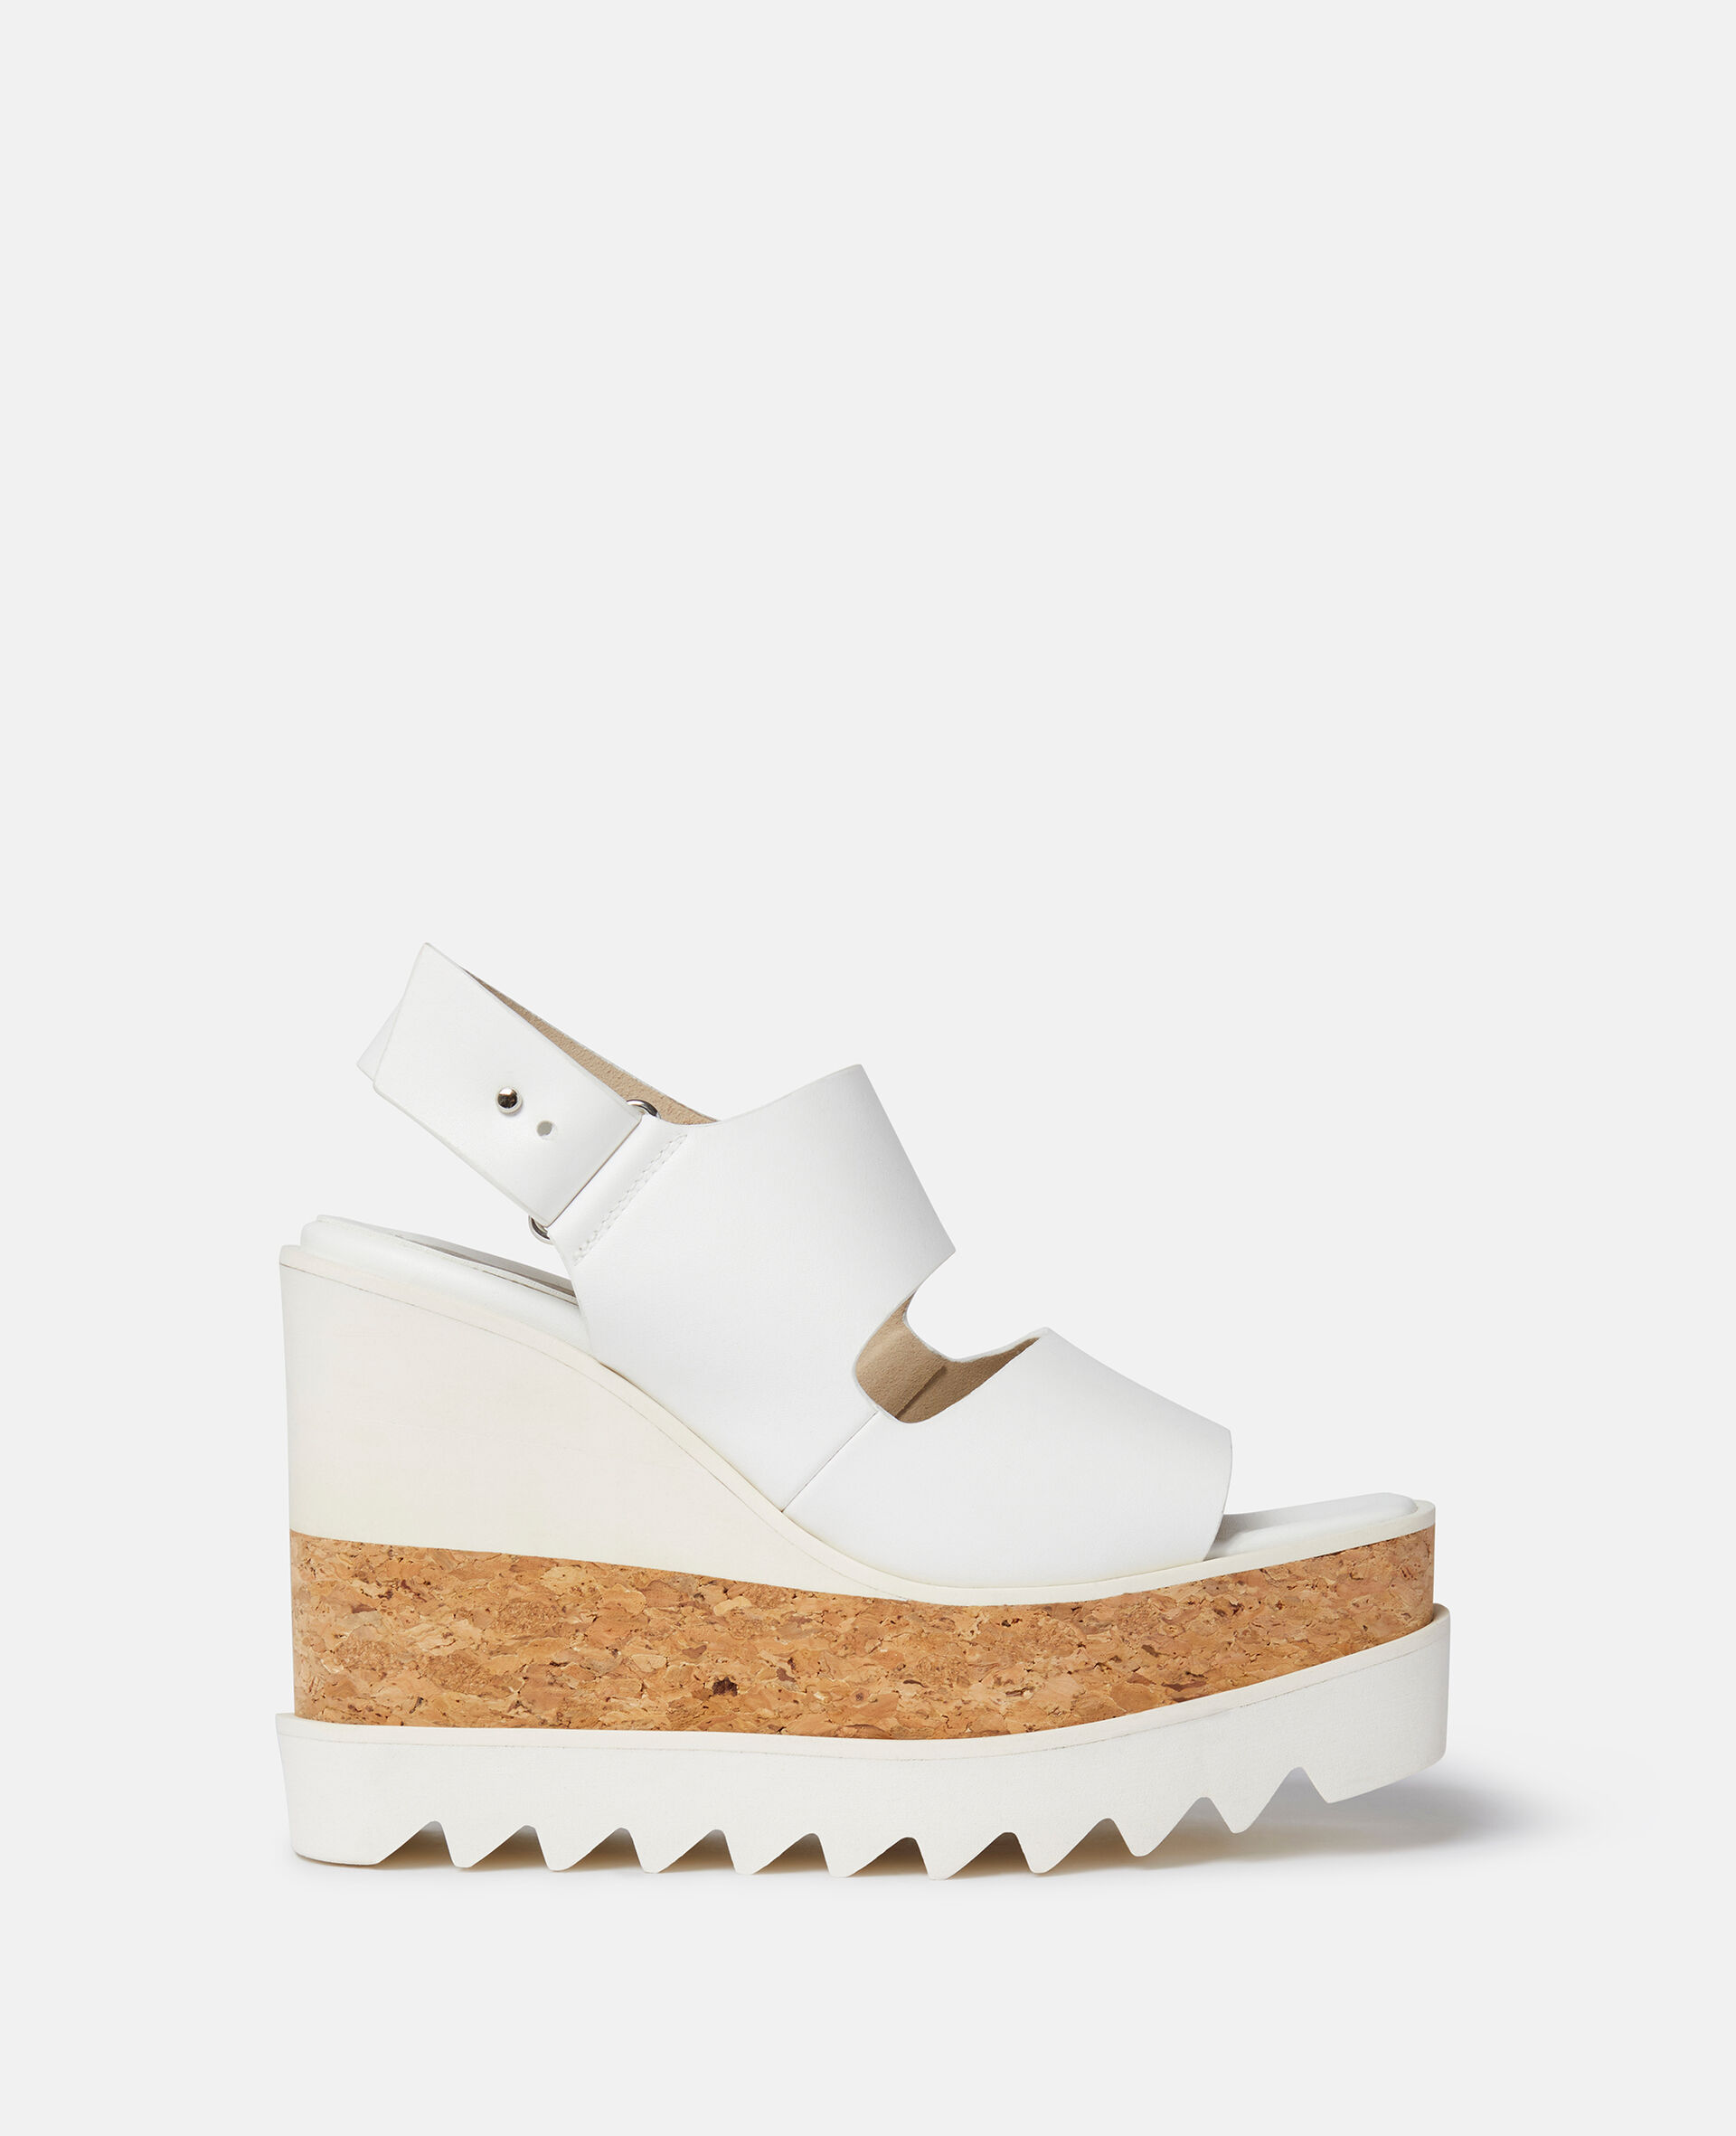 Elyse Alter Mat Platform Sandals-White-large image number 0